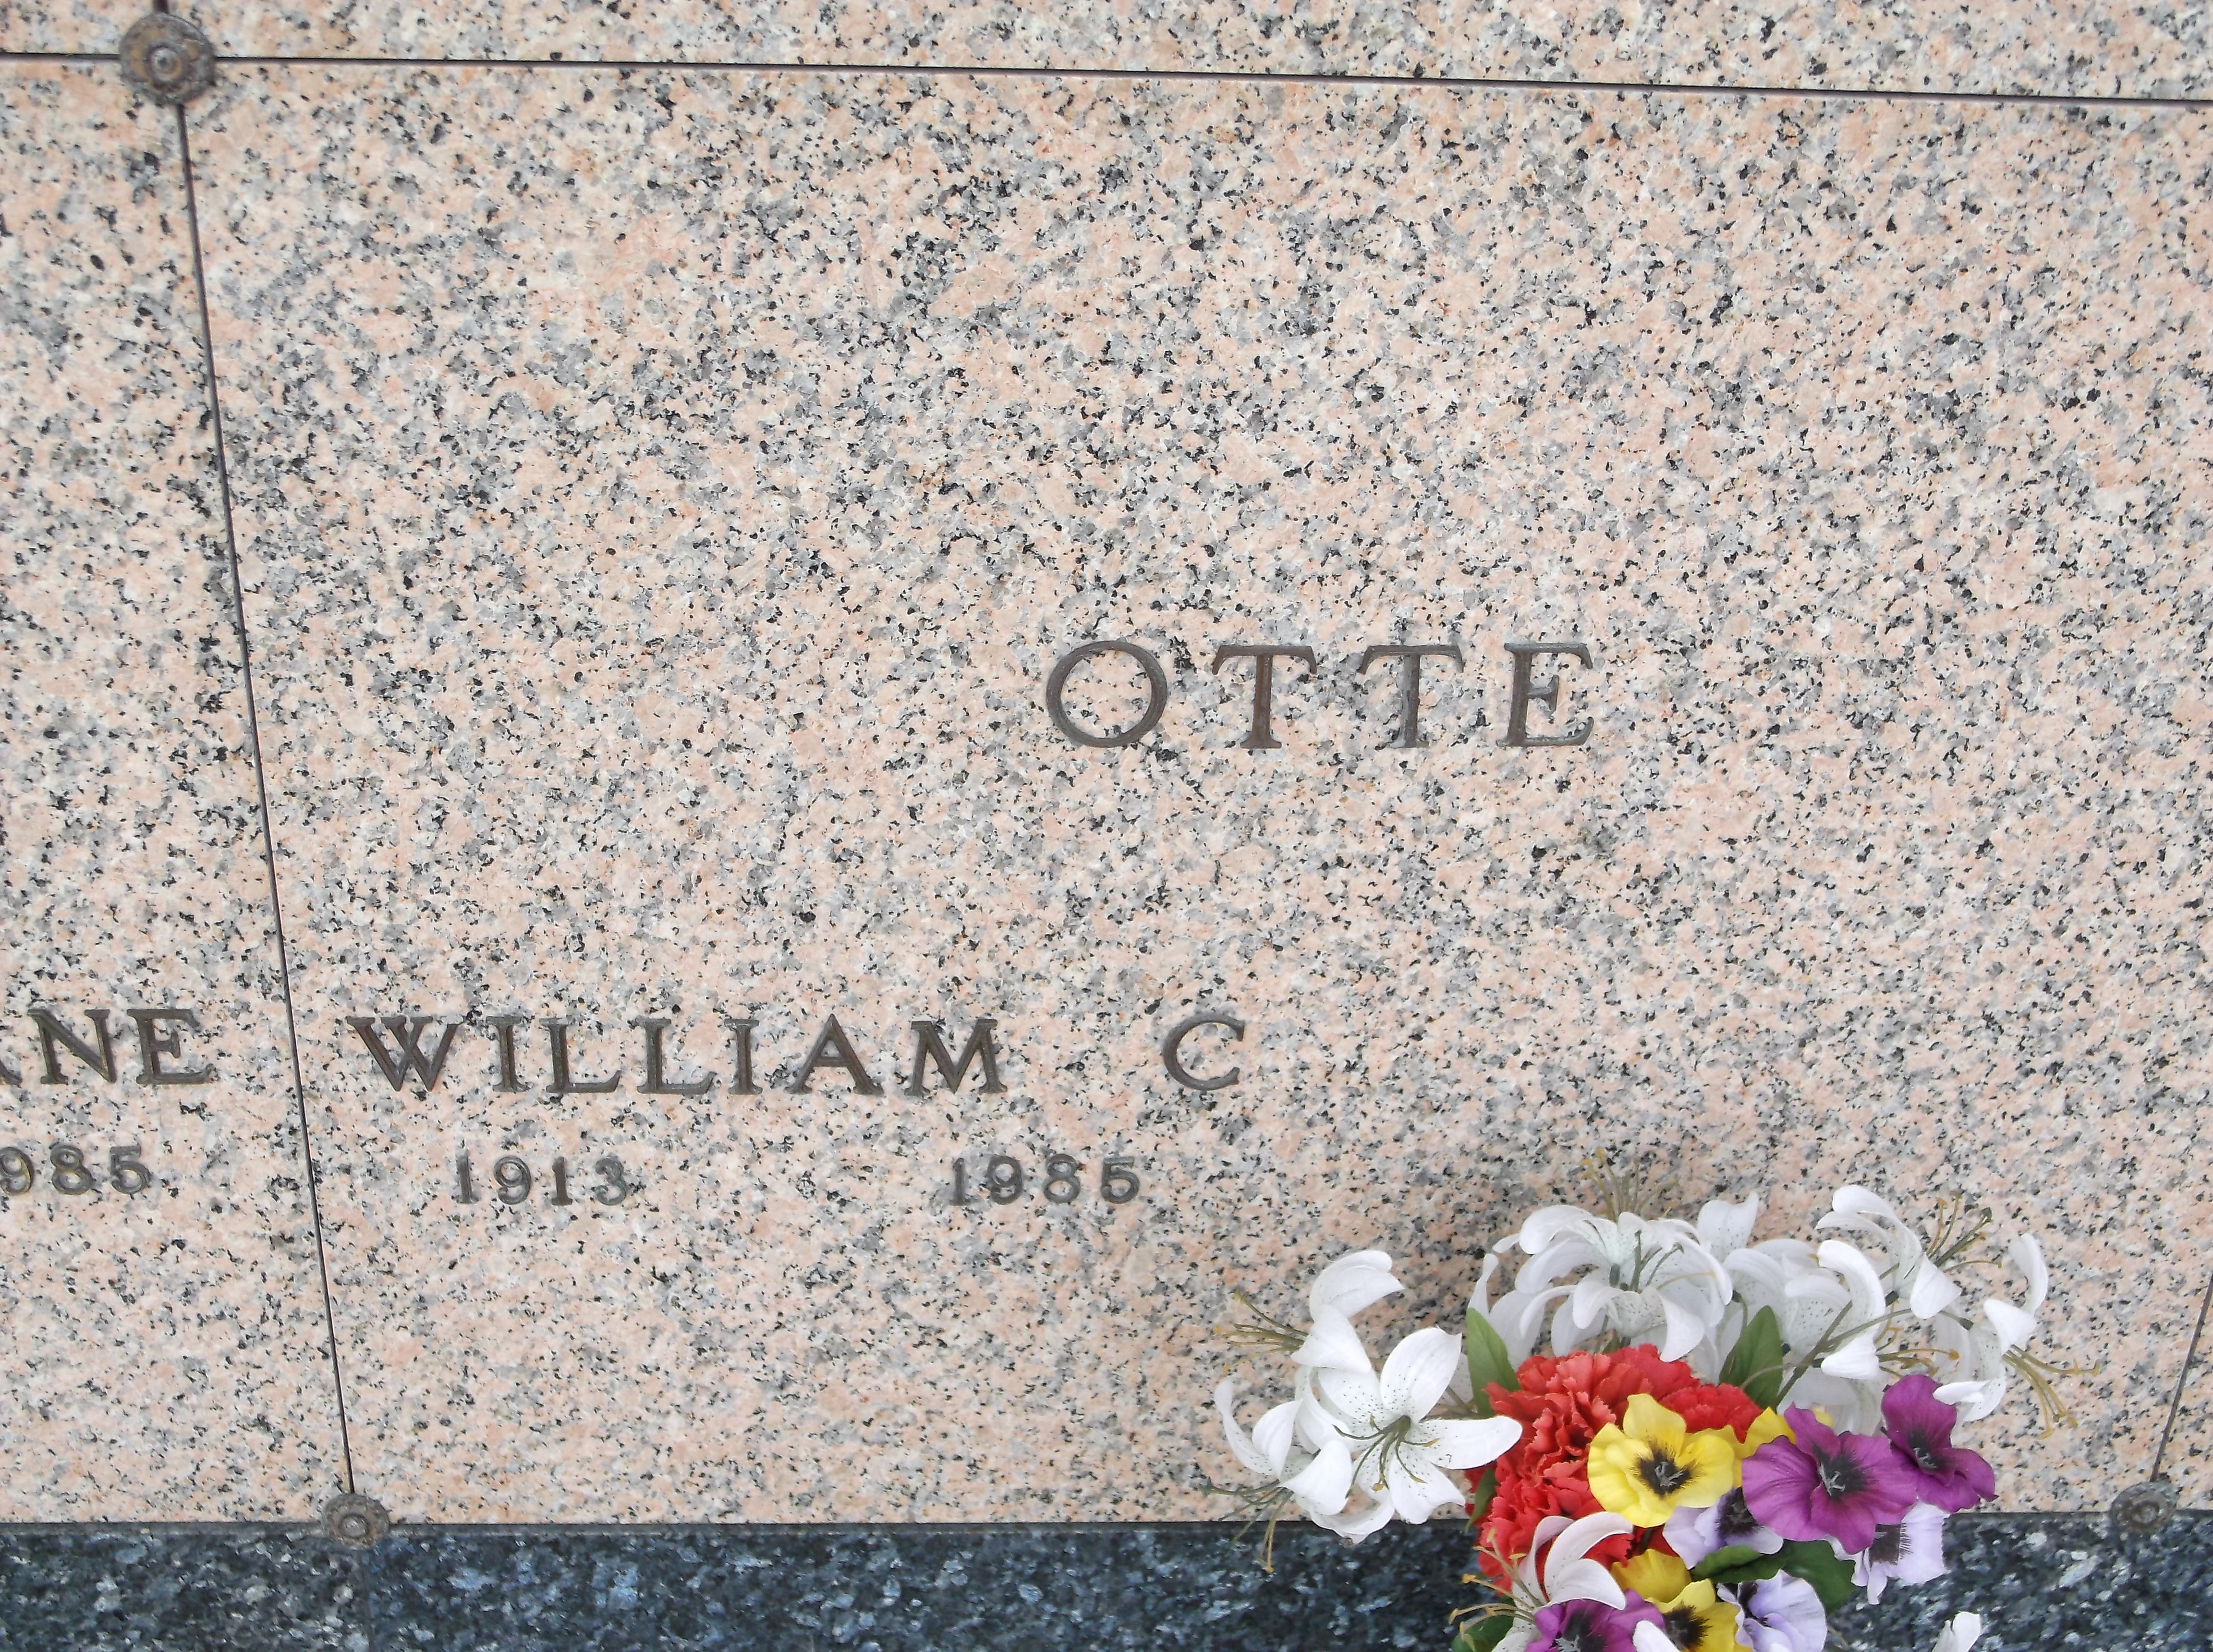 William C Otte